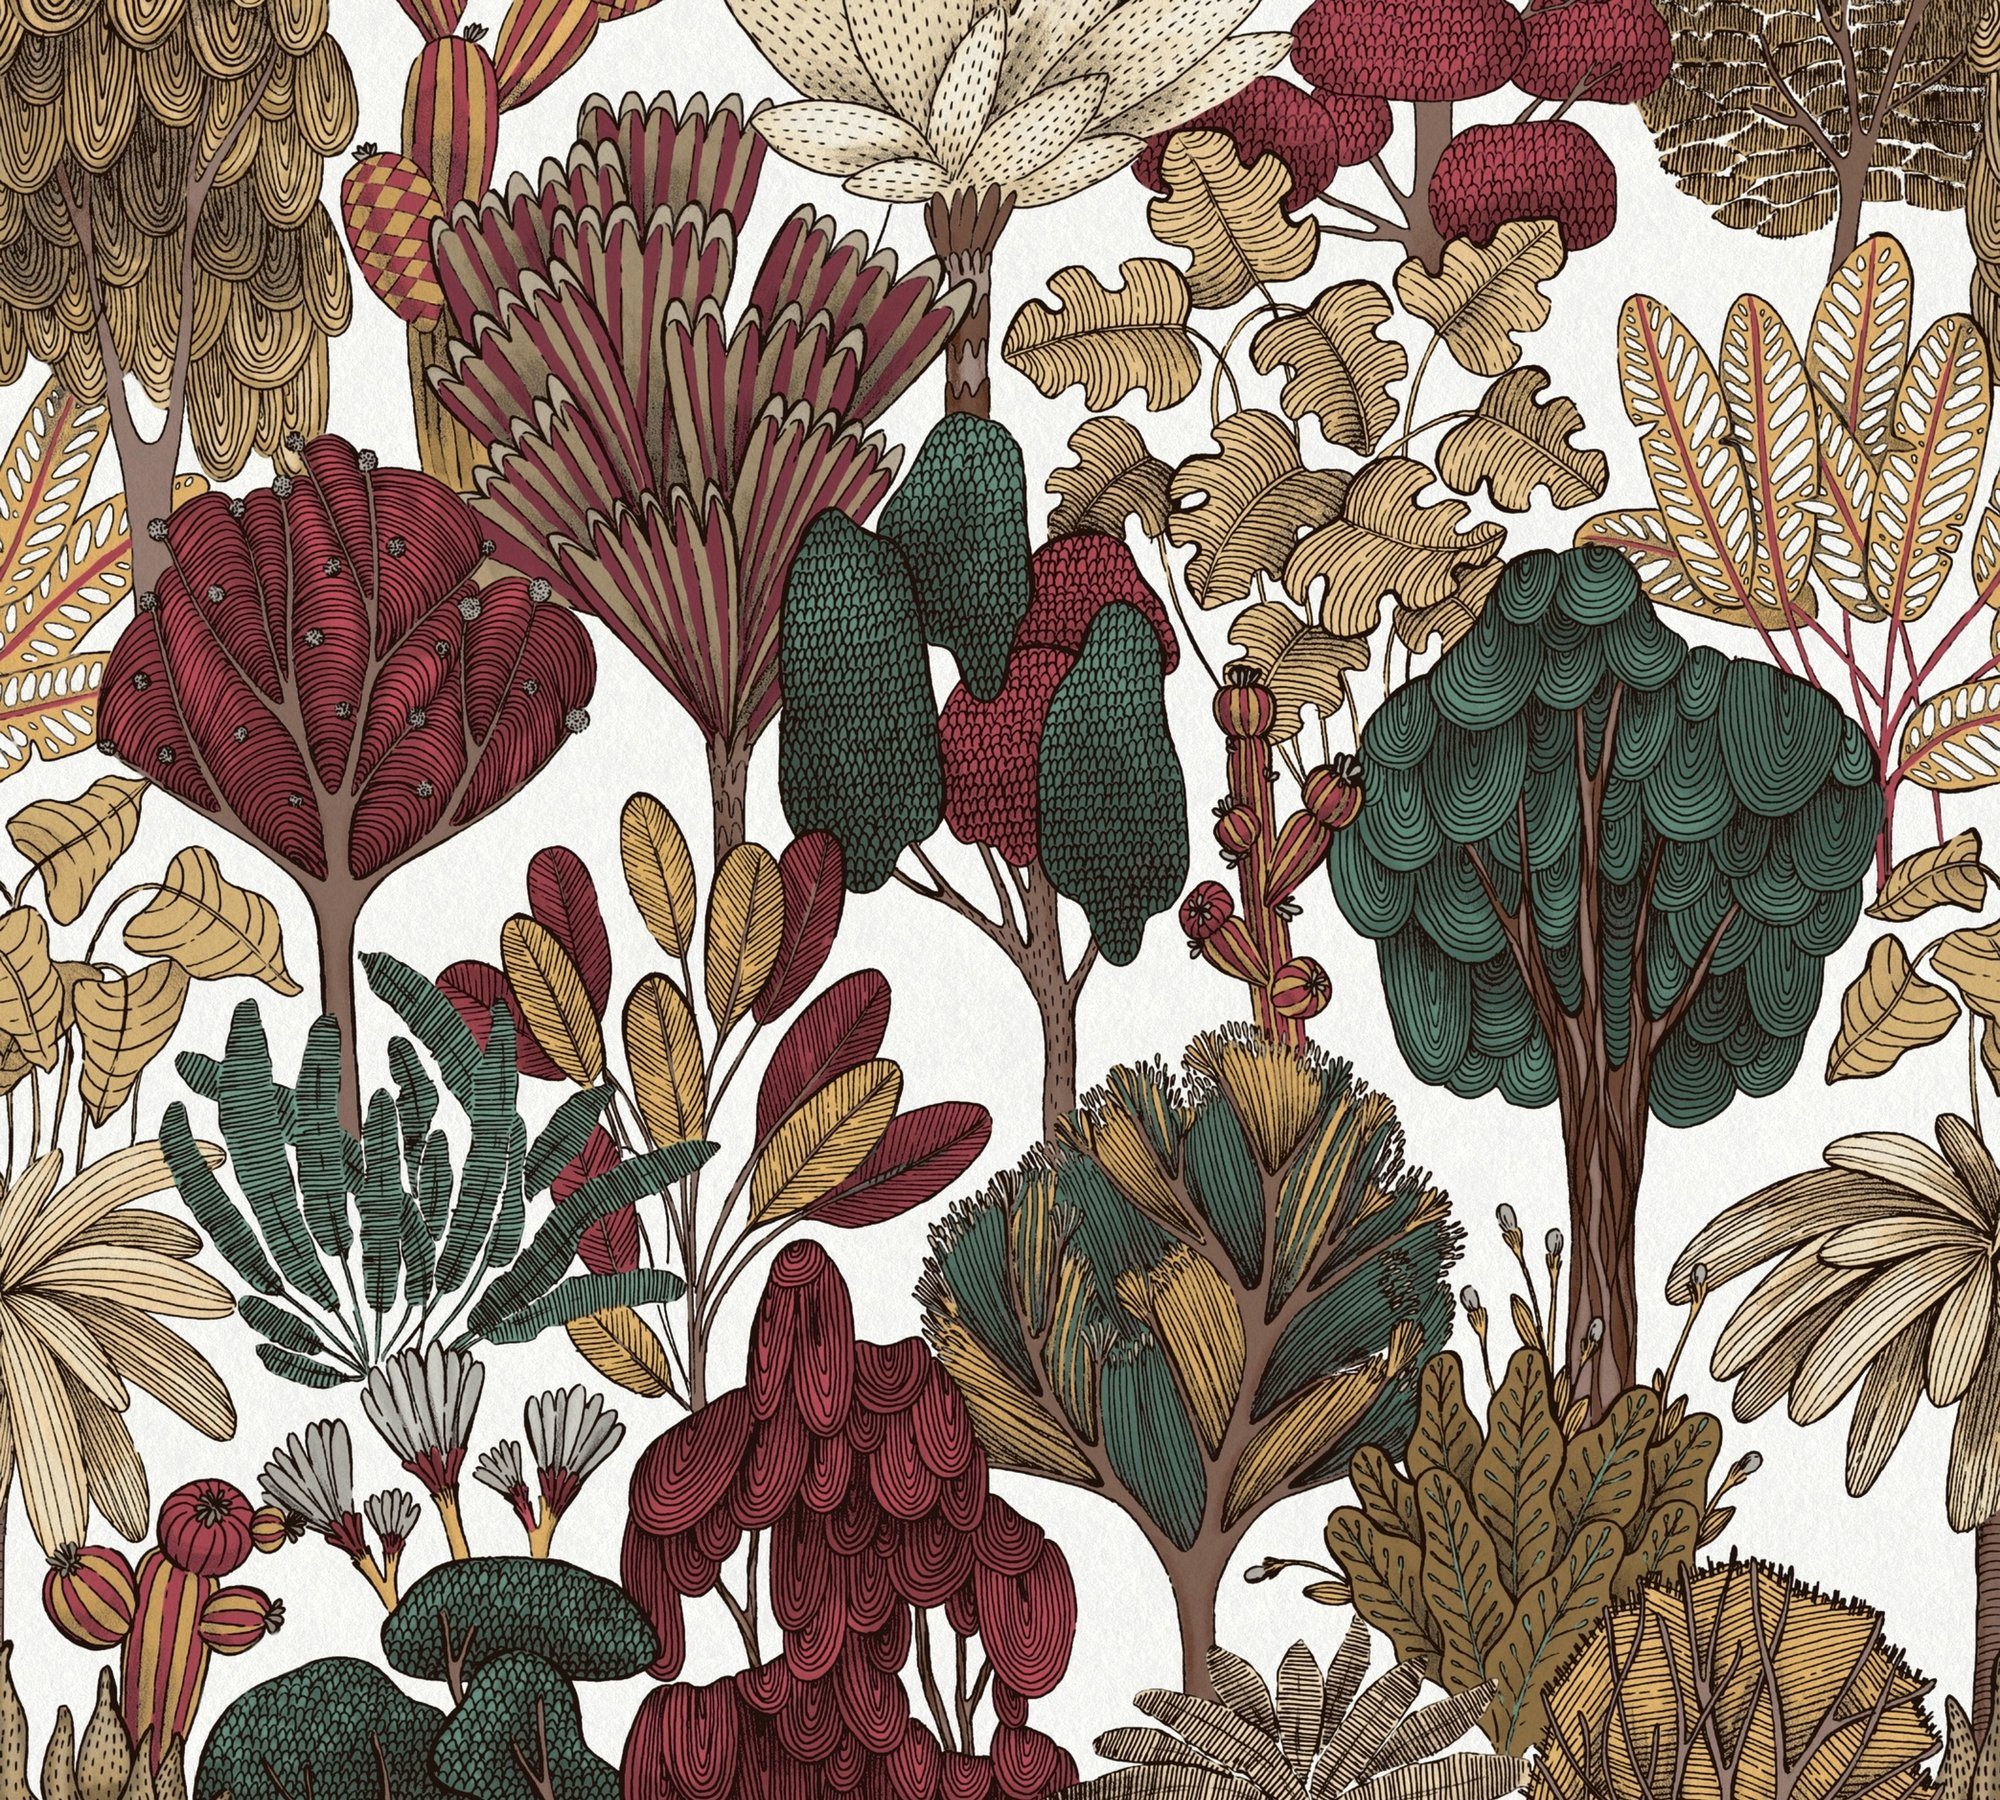 Architects botanisch, Création A.S. Impression, Vliestapete Dschungel Floral rot/beige/braun Tapete Blumentapete floral, glatt, Paper